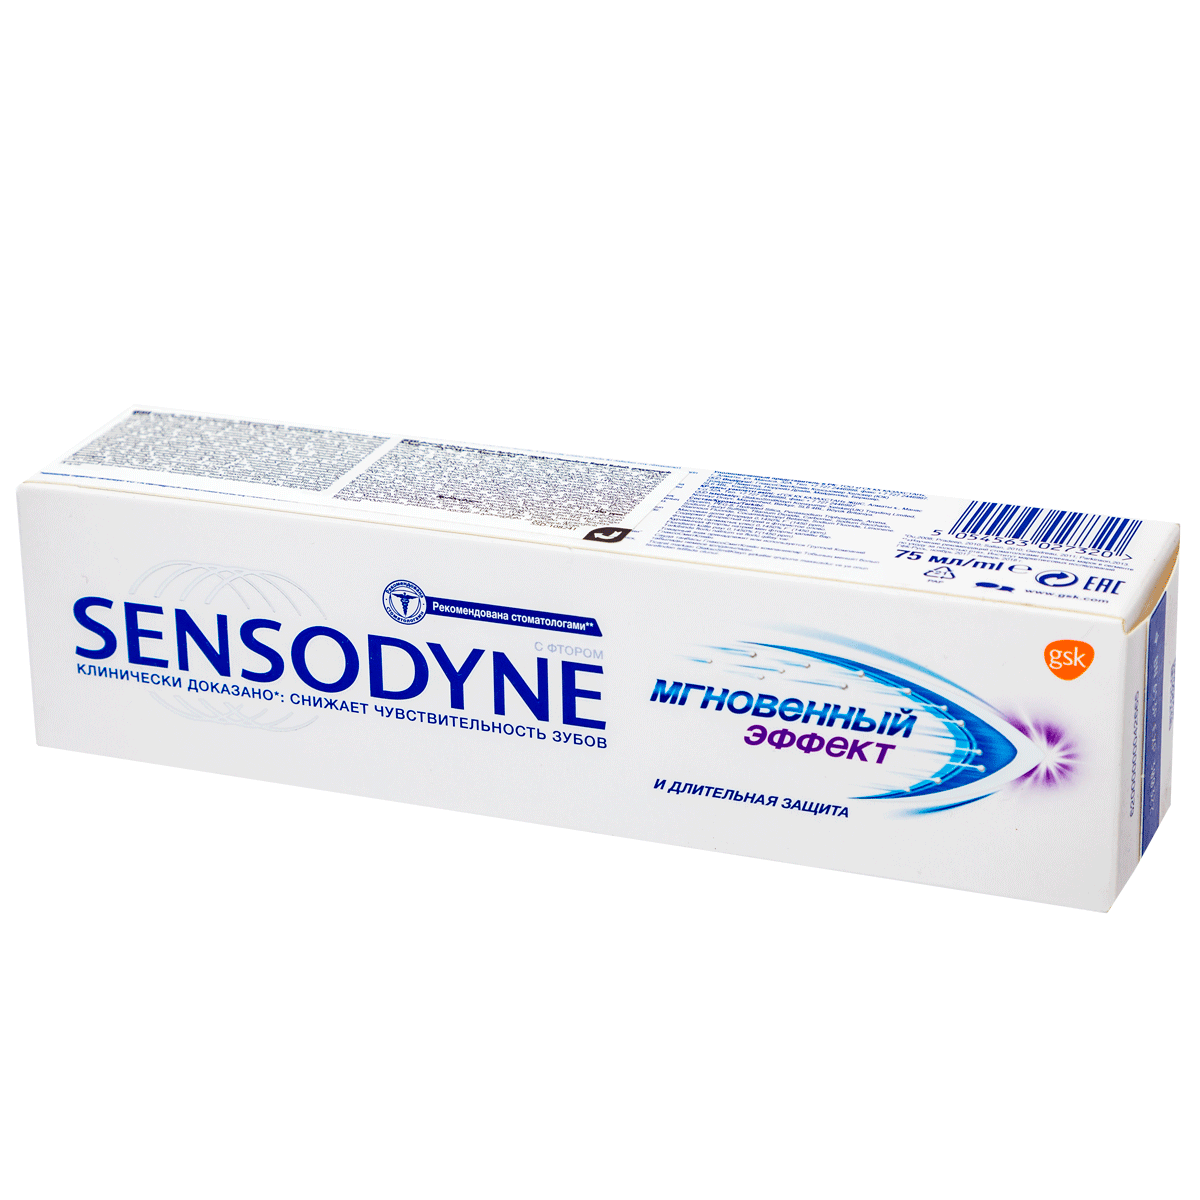 Ատամի մածուկ Sensodyne